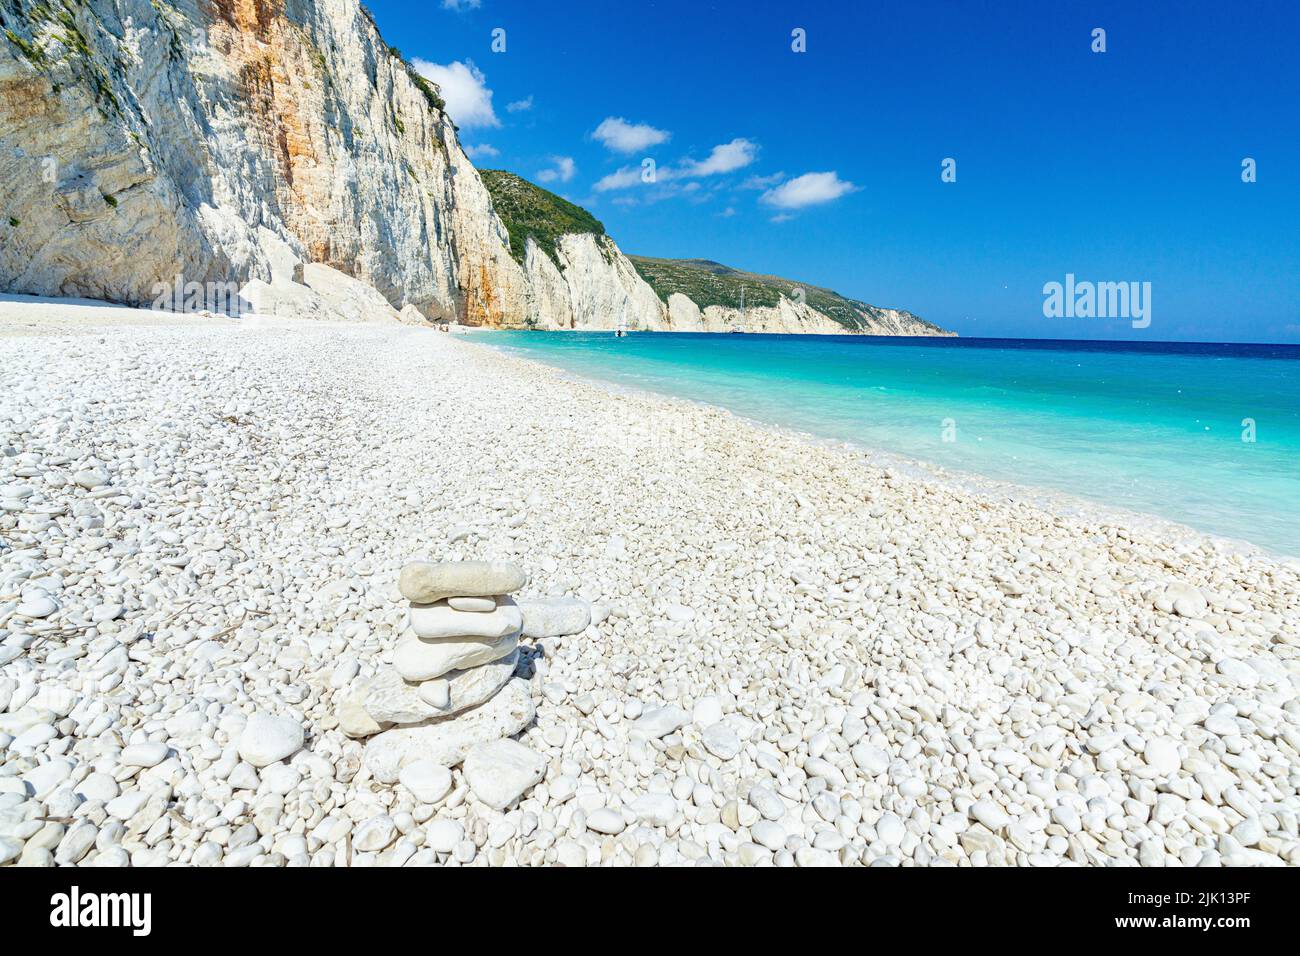 Helle Sonne auf weißen Kieselsteinen des Fteri Beach, die vom türkisfarbenen Meer gewaschen werden, Kefalonia, Ionische Inseln, griechische Inseln, Griechenland, Europa Stockfoto